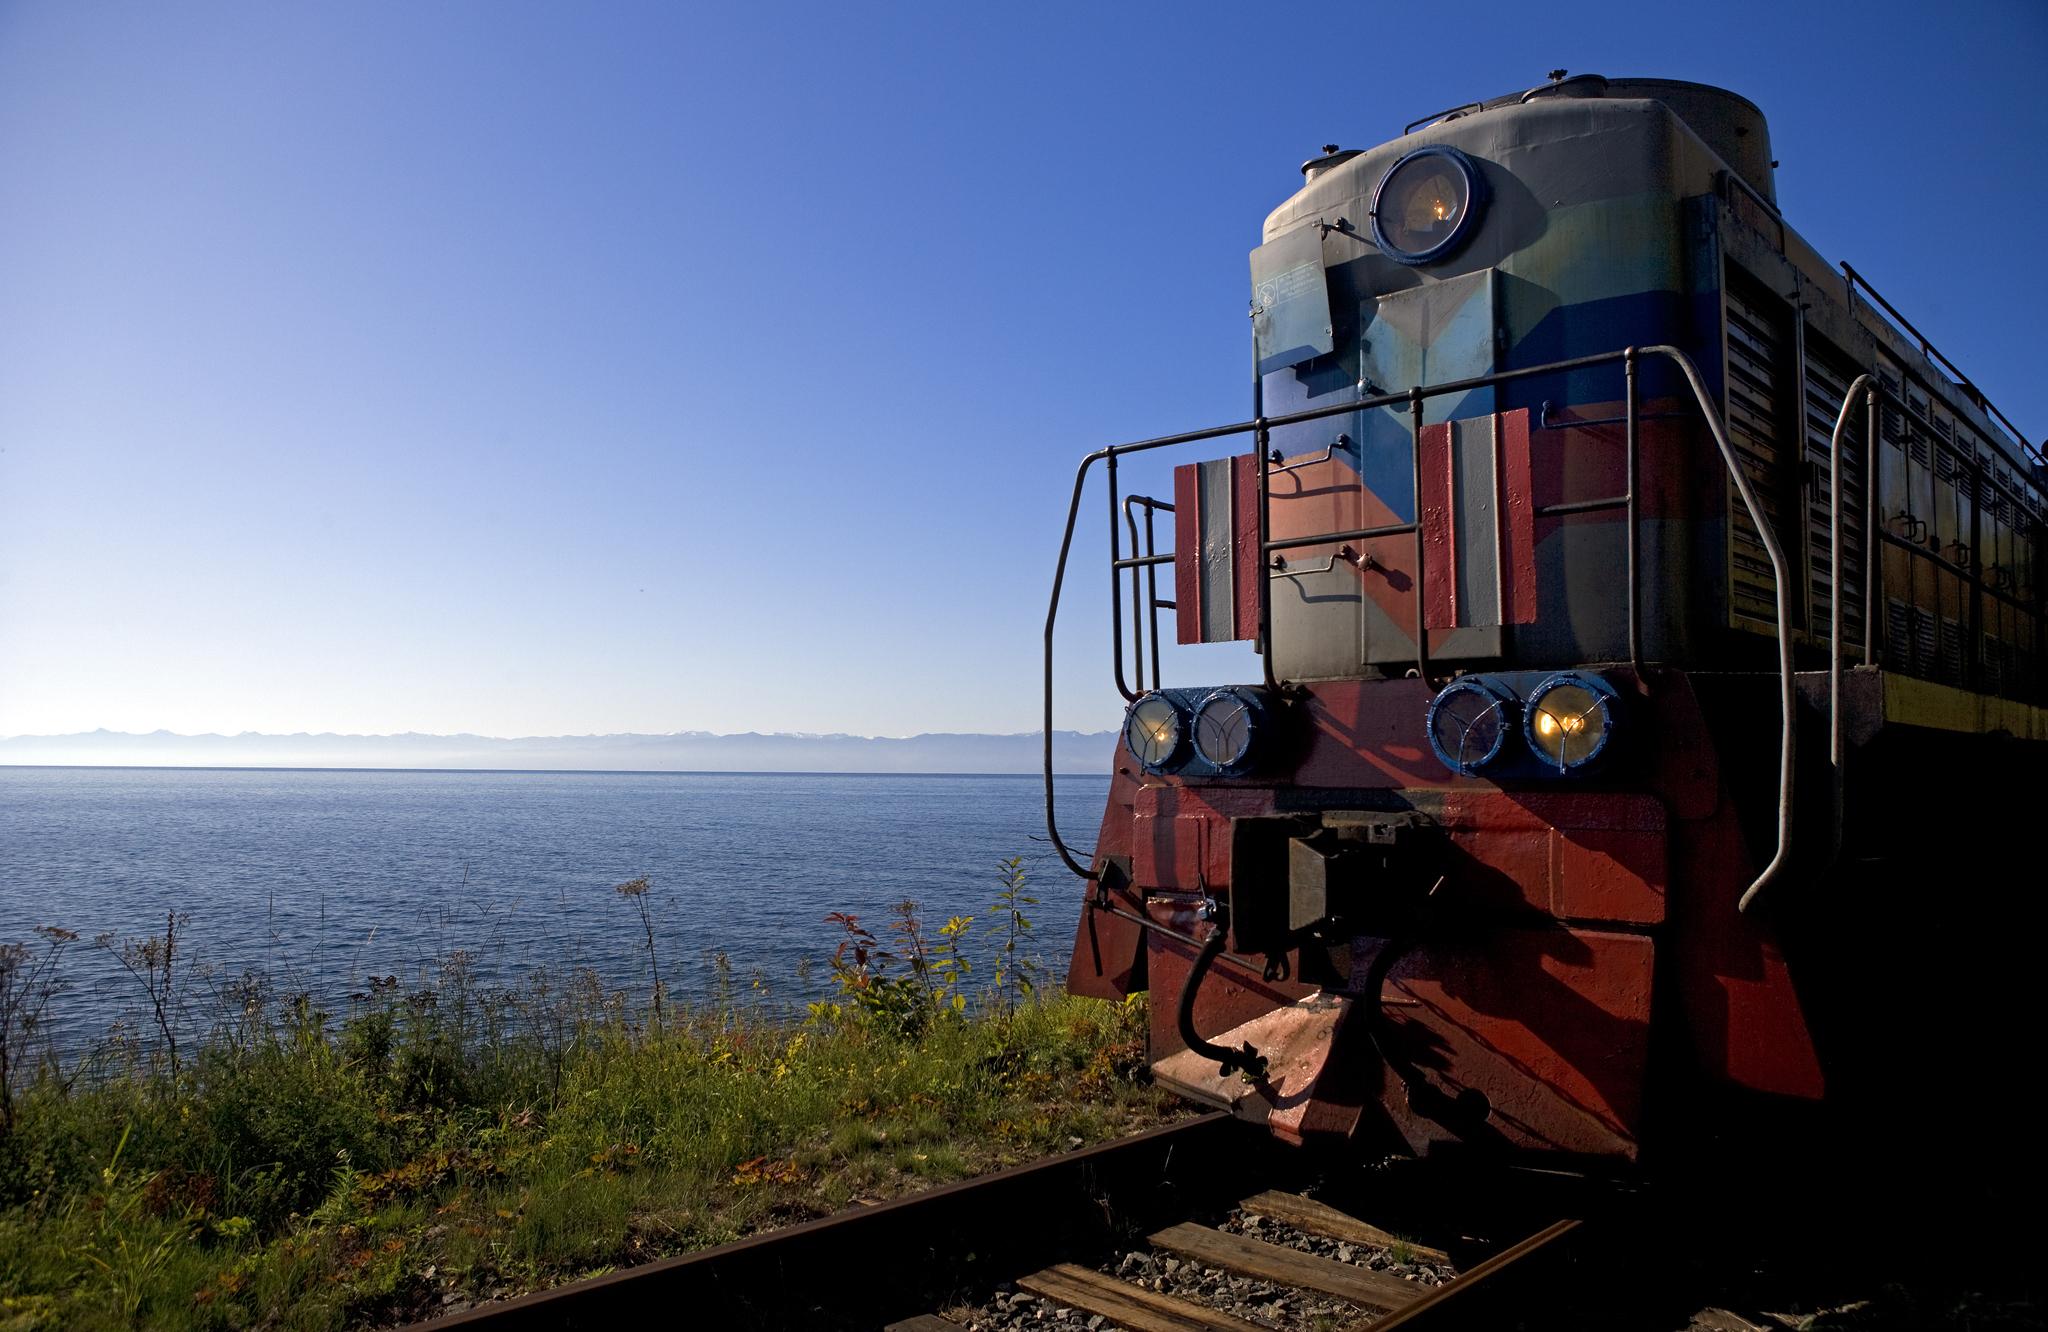 The train at Lake Baikal